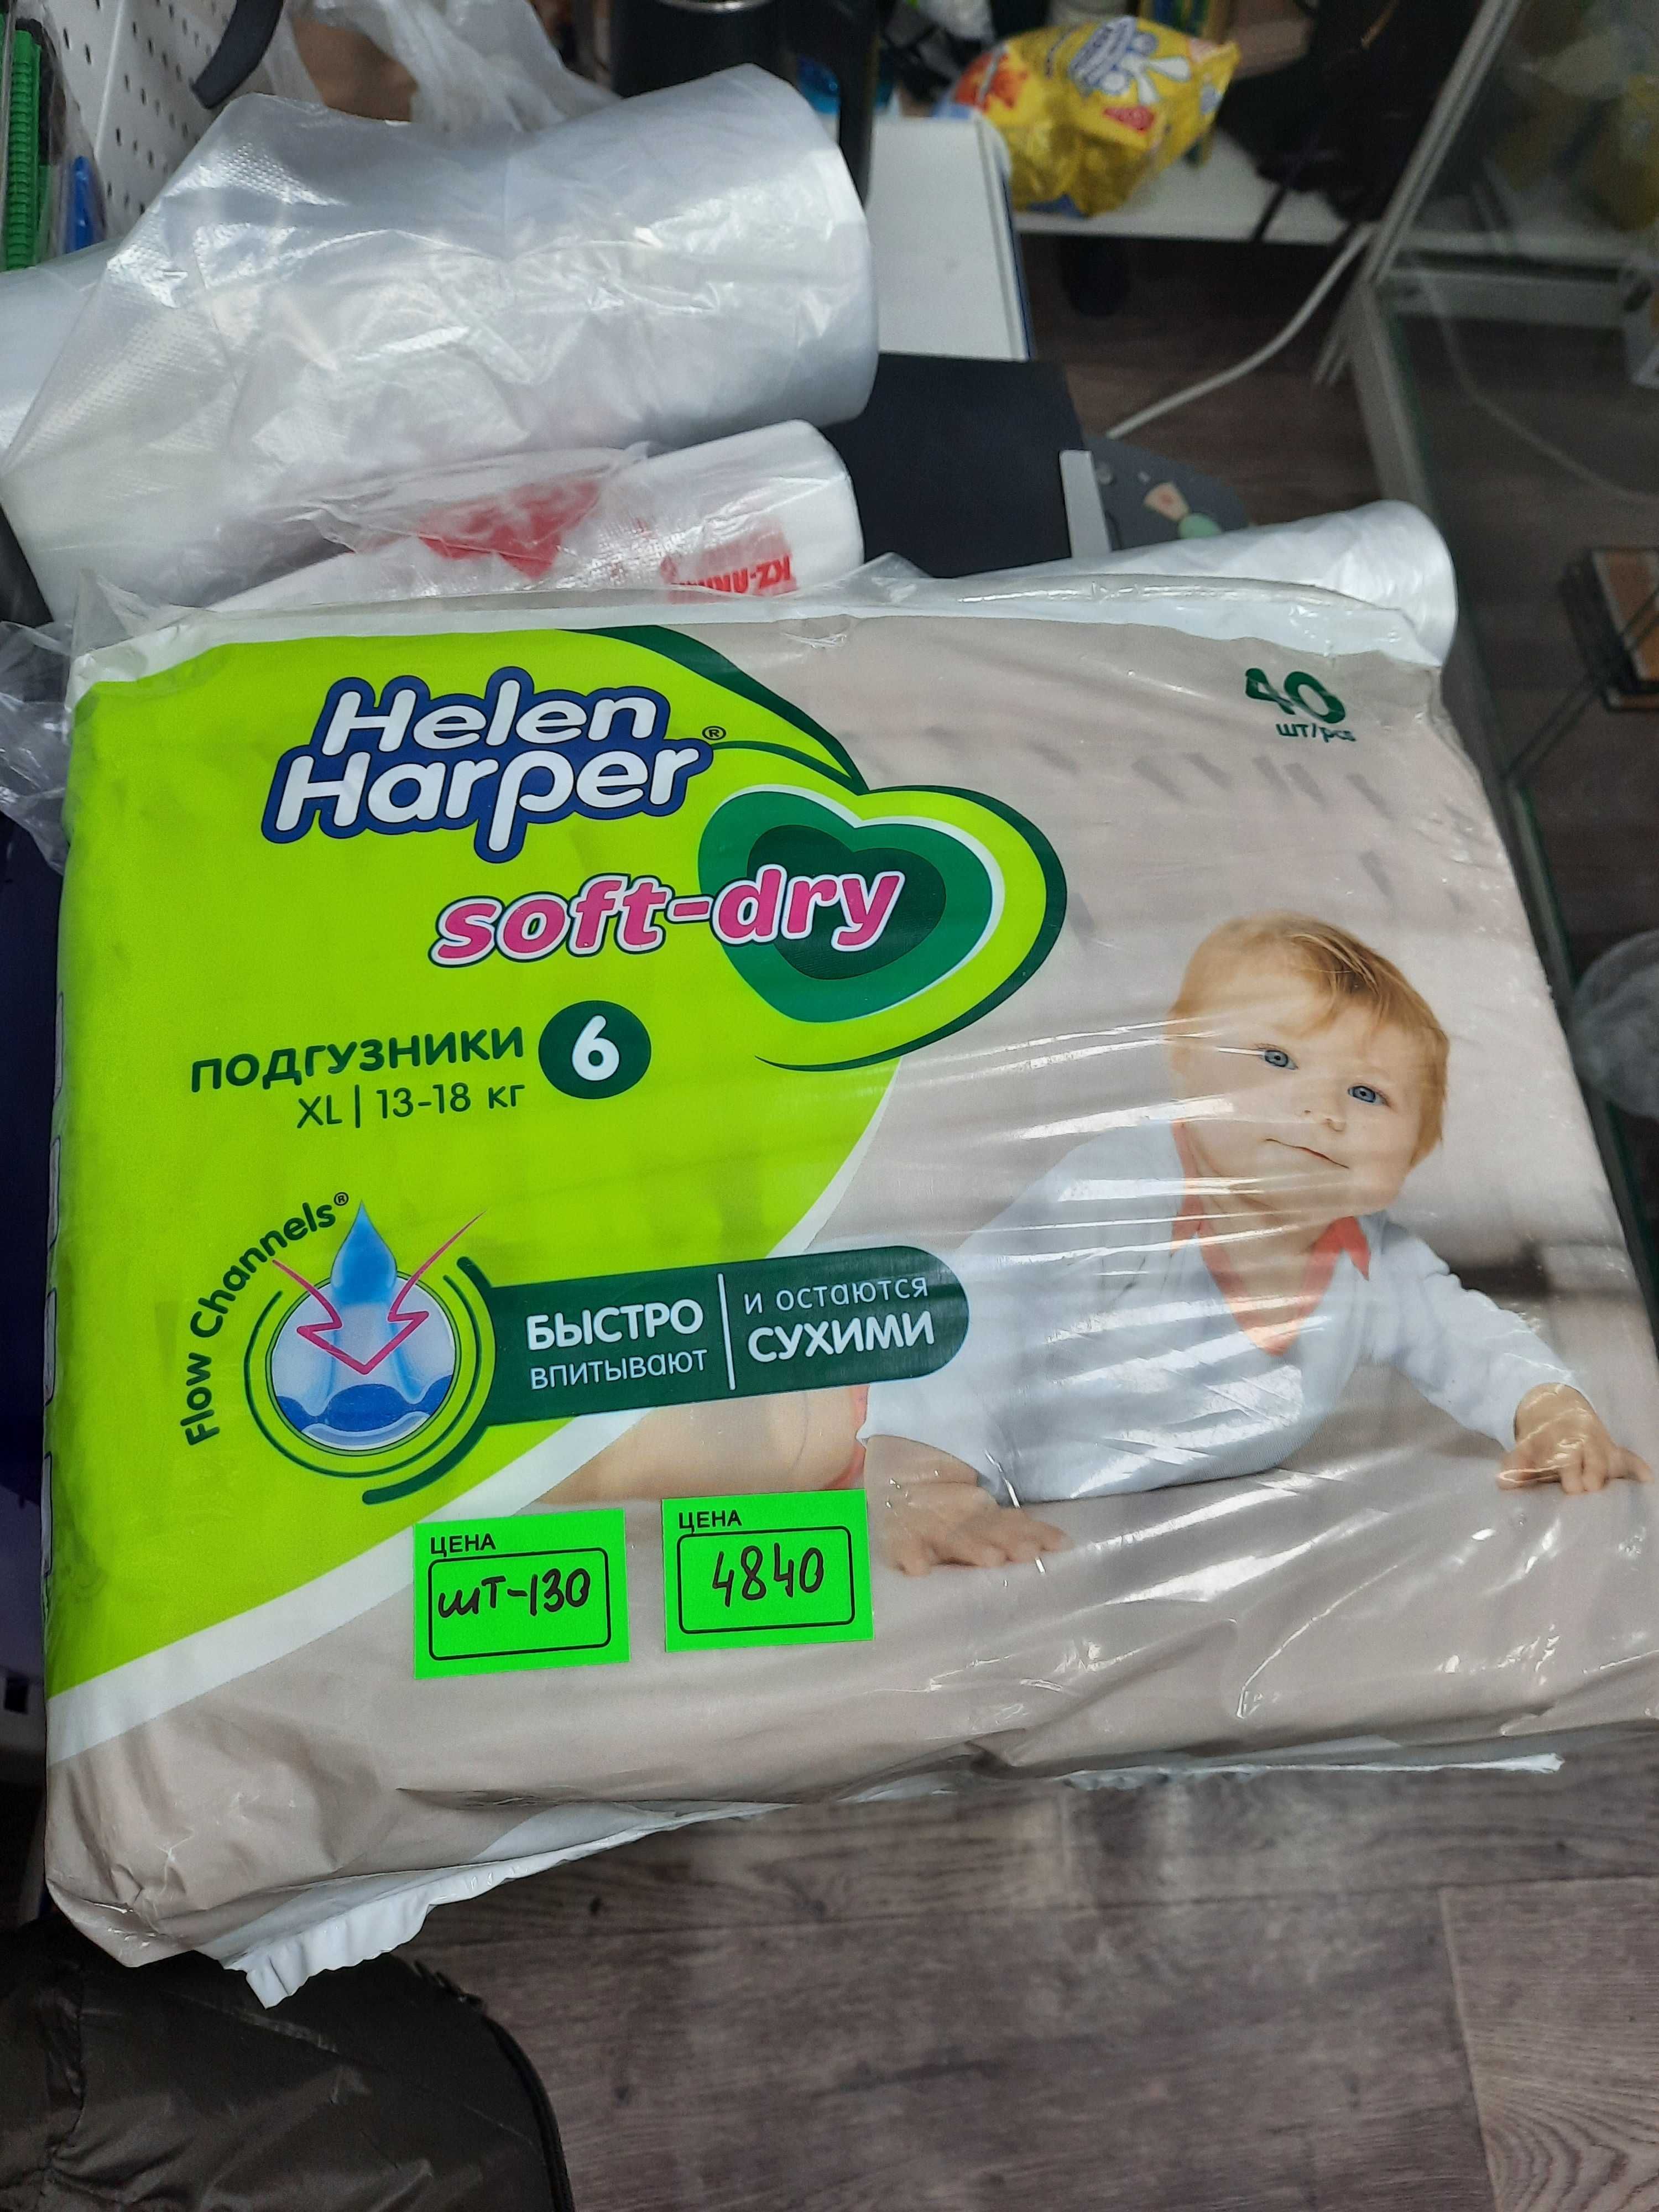 Подгузники Helen Harper 6